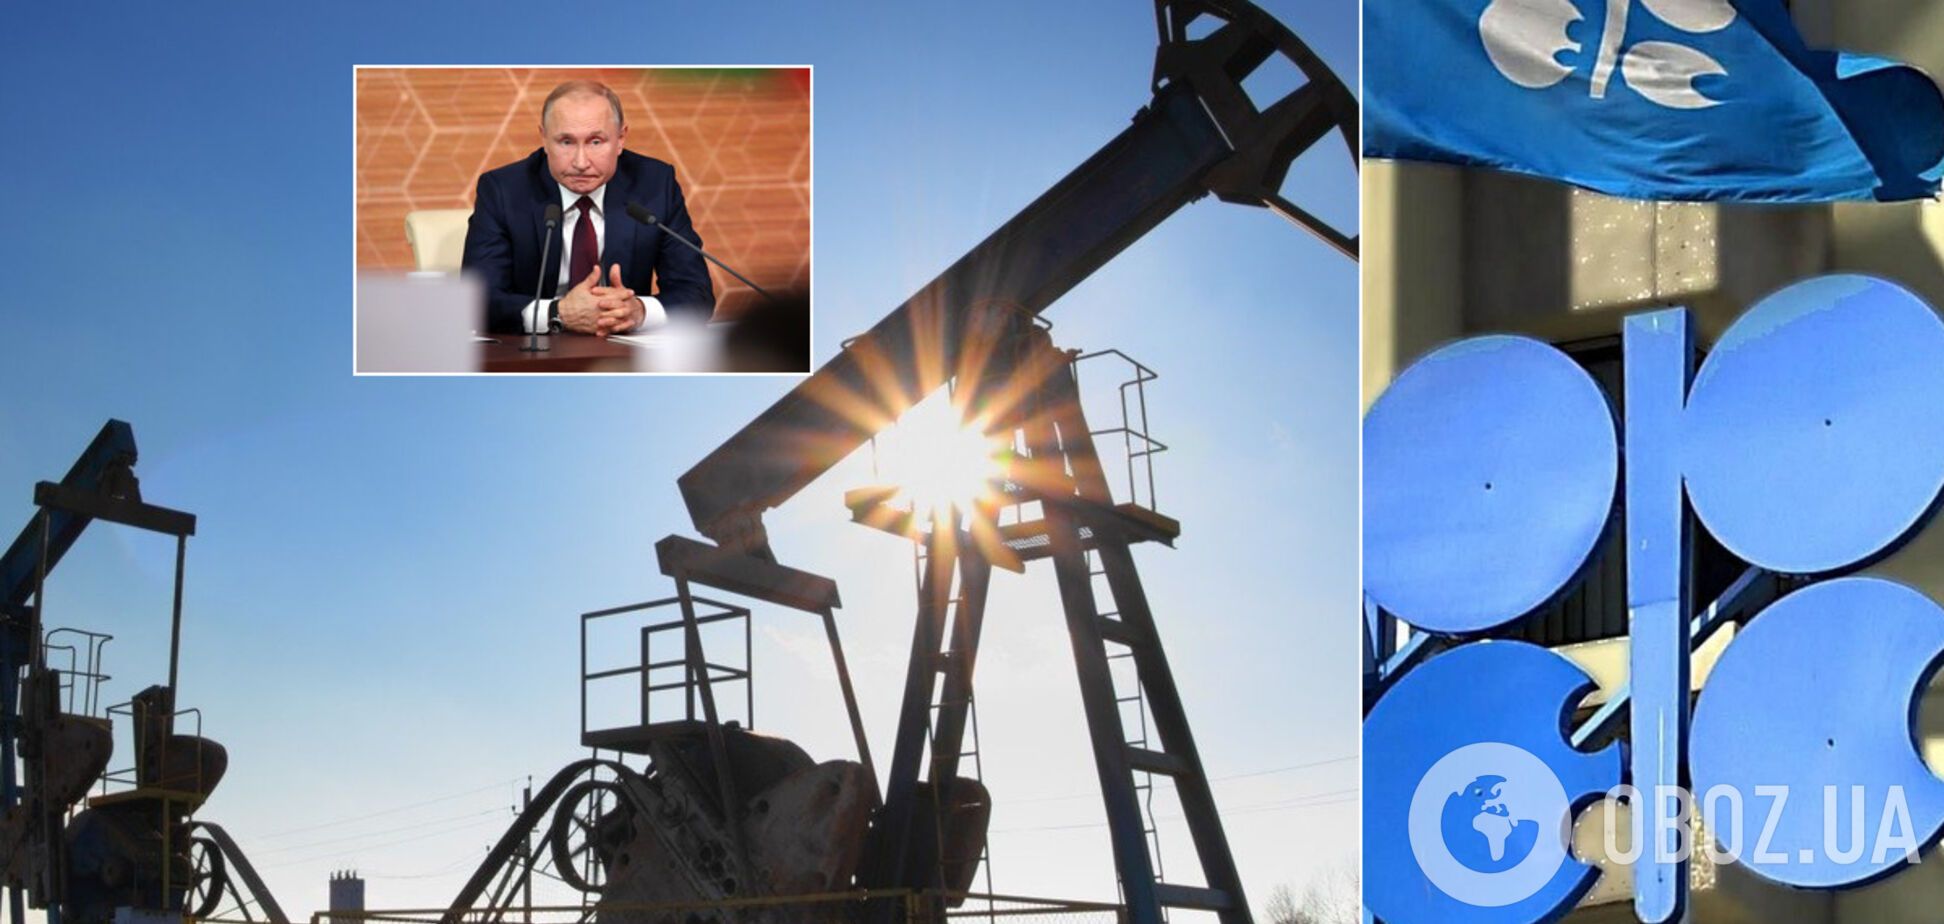 Переговоры ОПЕК+ сорвались из-за позиции одной из стран: что будет с добычей нефти